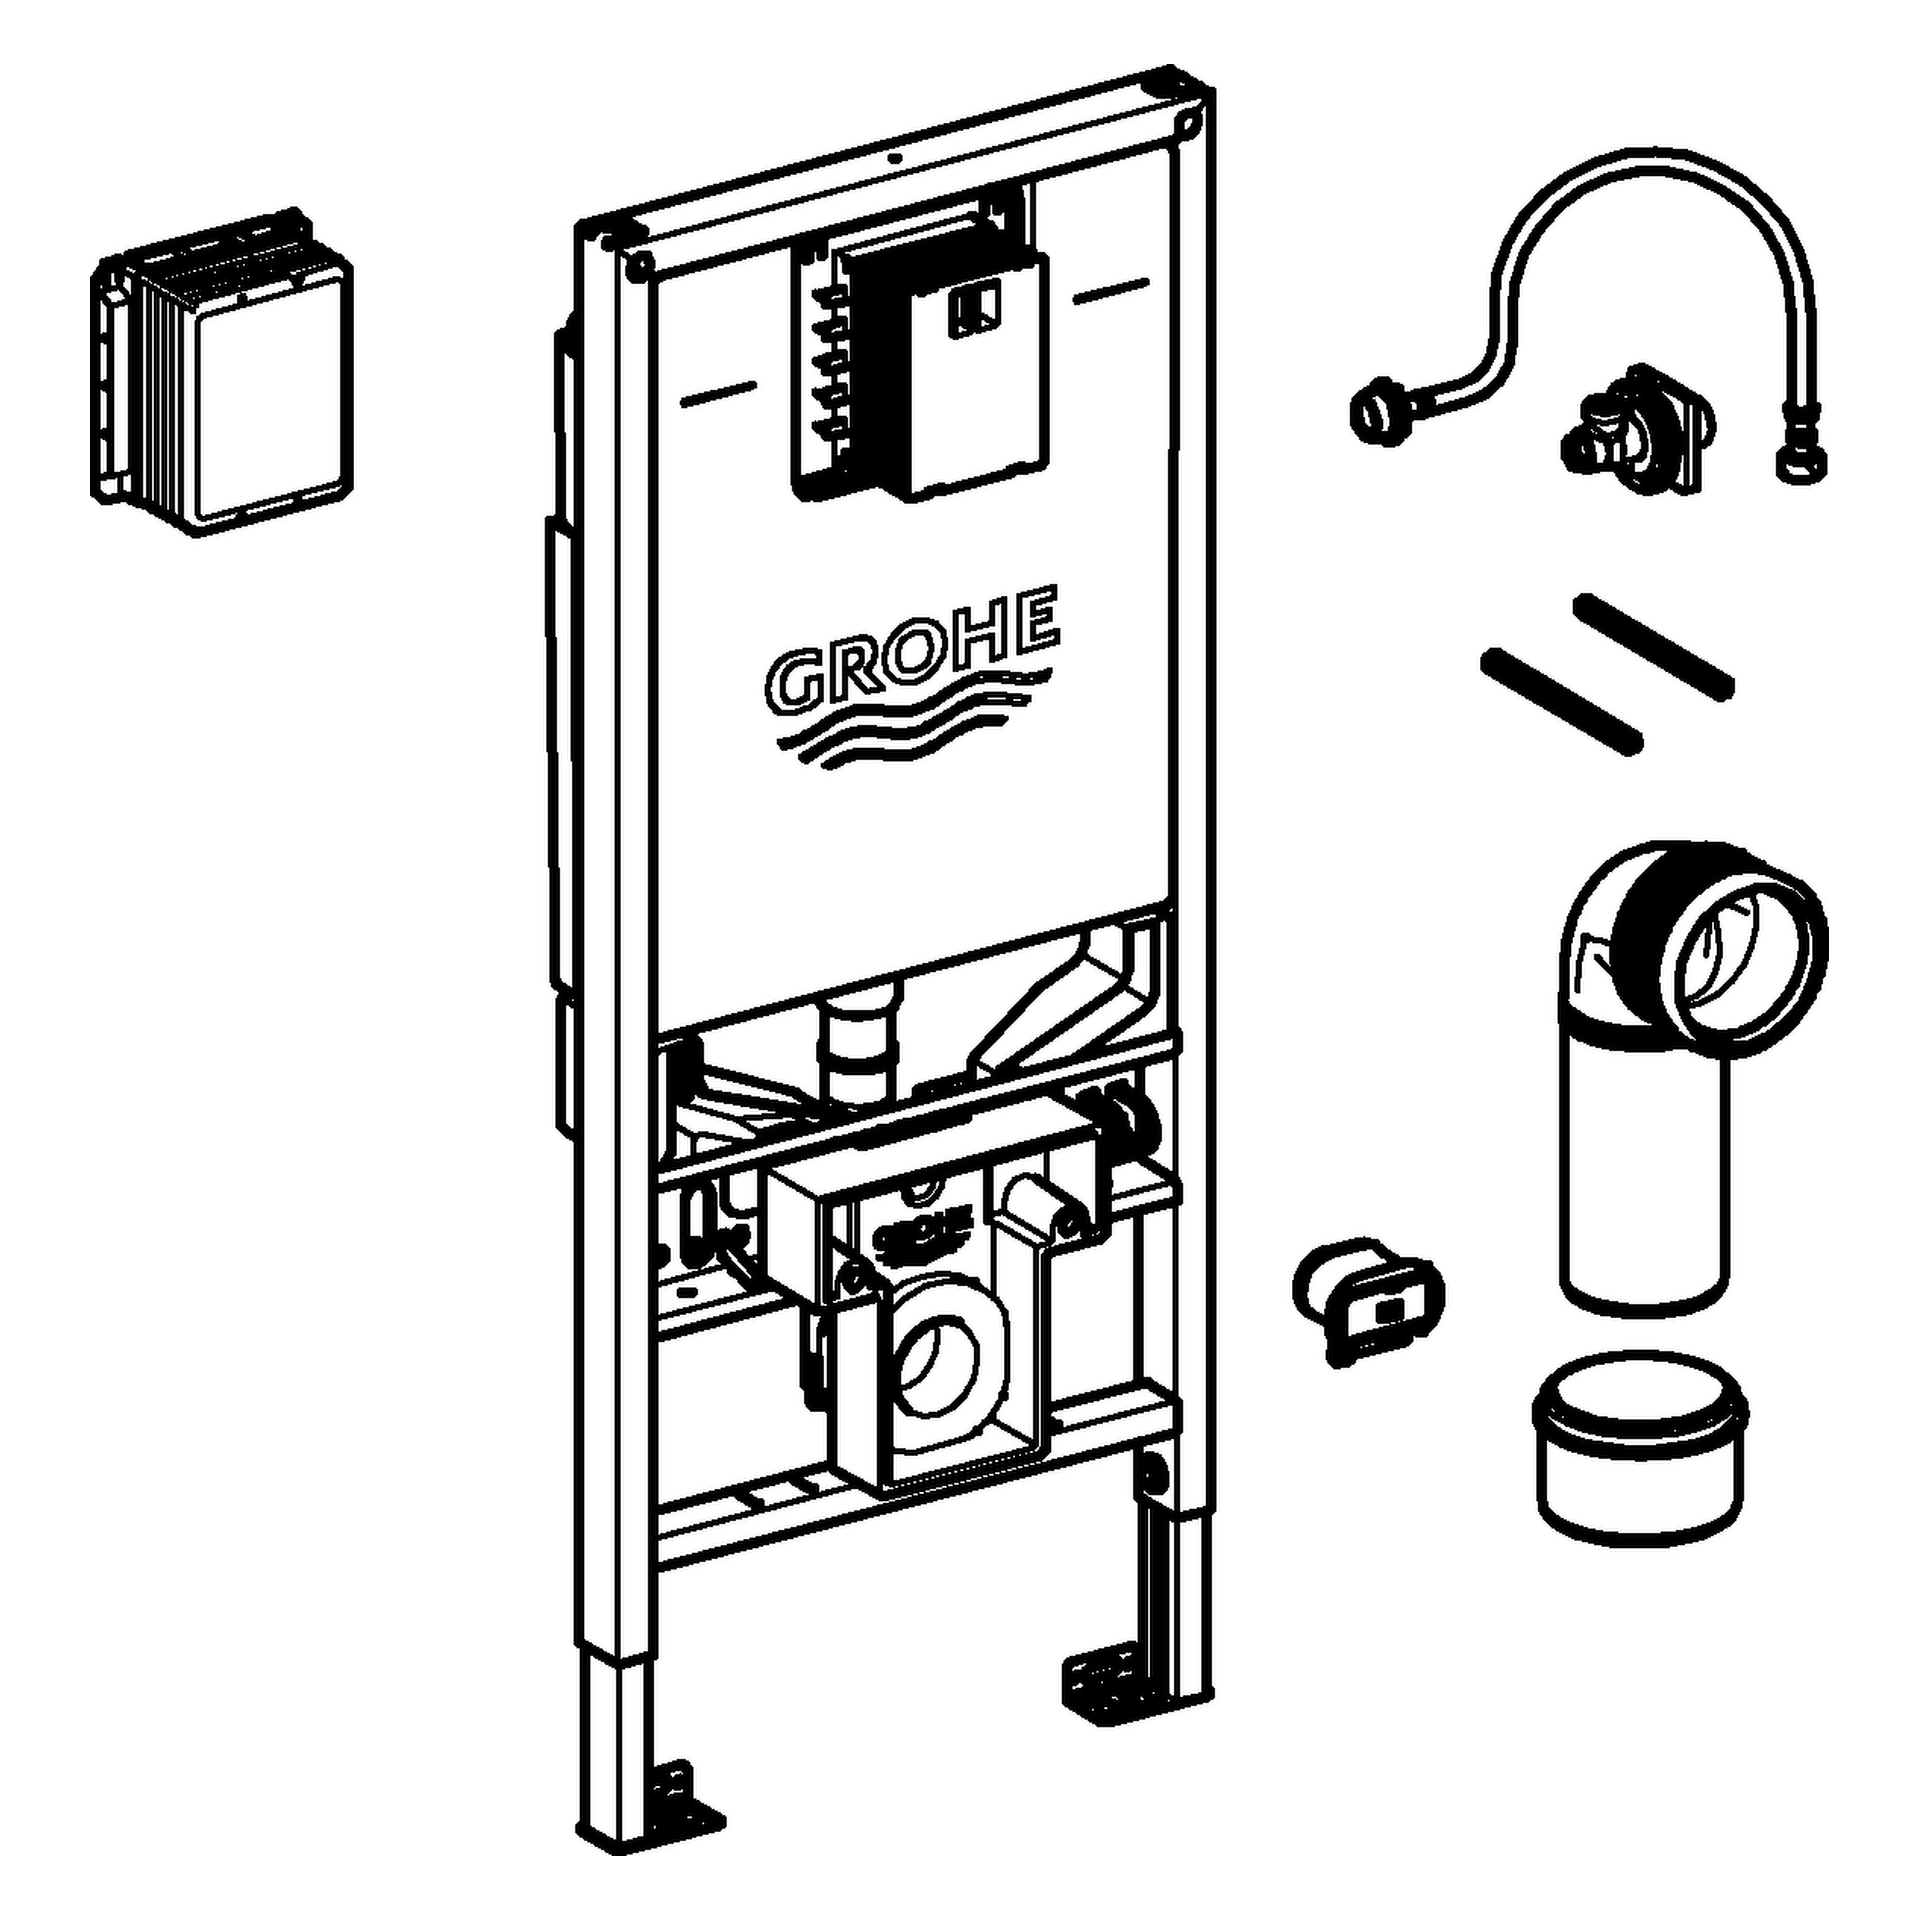 WC-Element Rapid SLX 39865, 1,13 m Bauhöhe, mit Spülstromdrossel, mit Stromanschluss (Klemmdose) und Wasseranschluss für Dusch-WC, für Vorwand- oder Ständerwandmontage, je 1 Revisionsschacht für kleine und große Betätigungen, ohne Wandwinkel